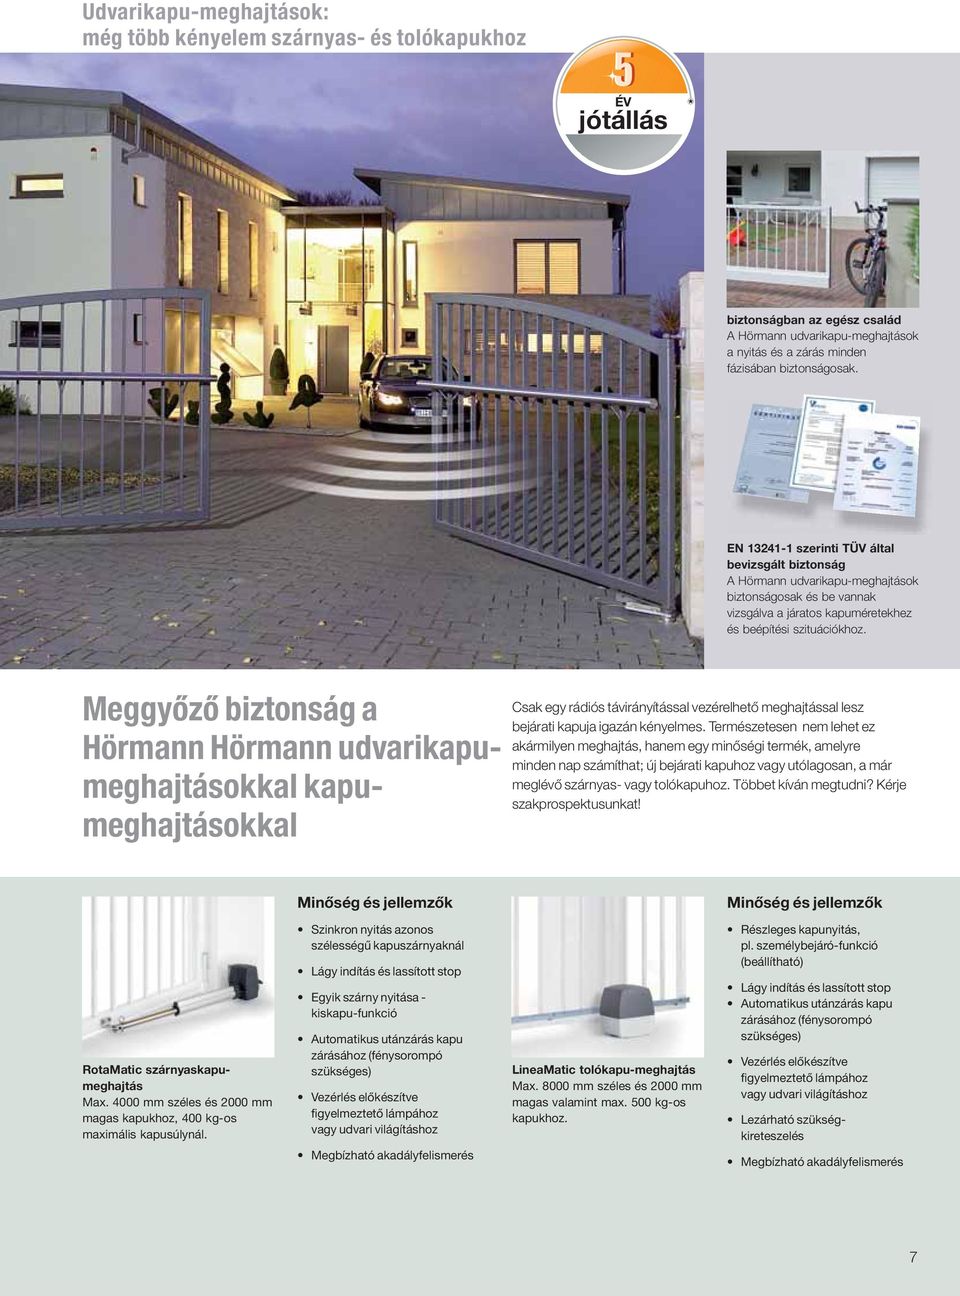 Meggyőző biztonság a Hörmann Hörmann udvarikapumeghajtásokkal kapumeghajtásokkal Csak egy rádiós távirányítással vezérelhető meghajtással lesz bejárati kapuja igazán kényelmes.